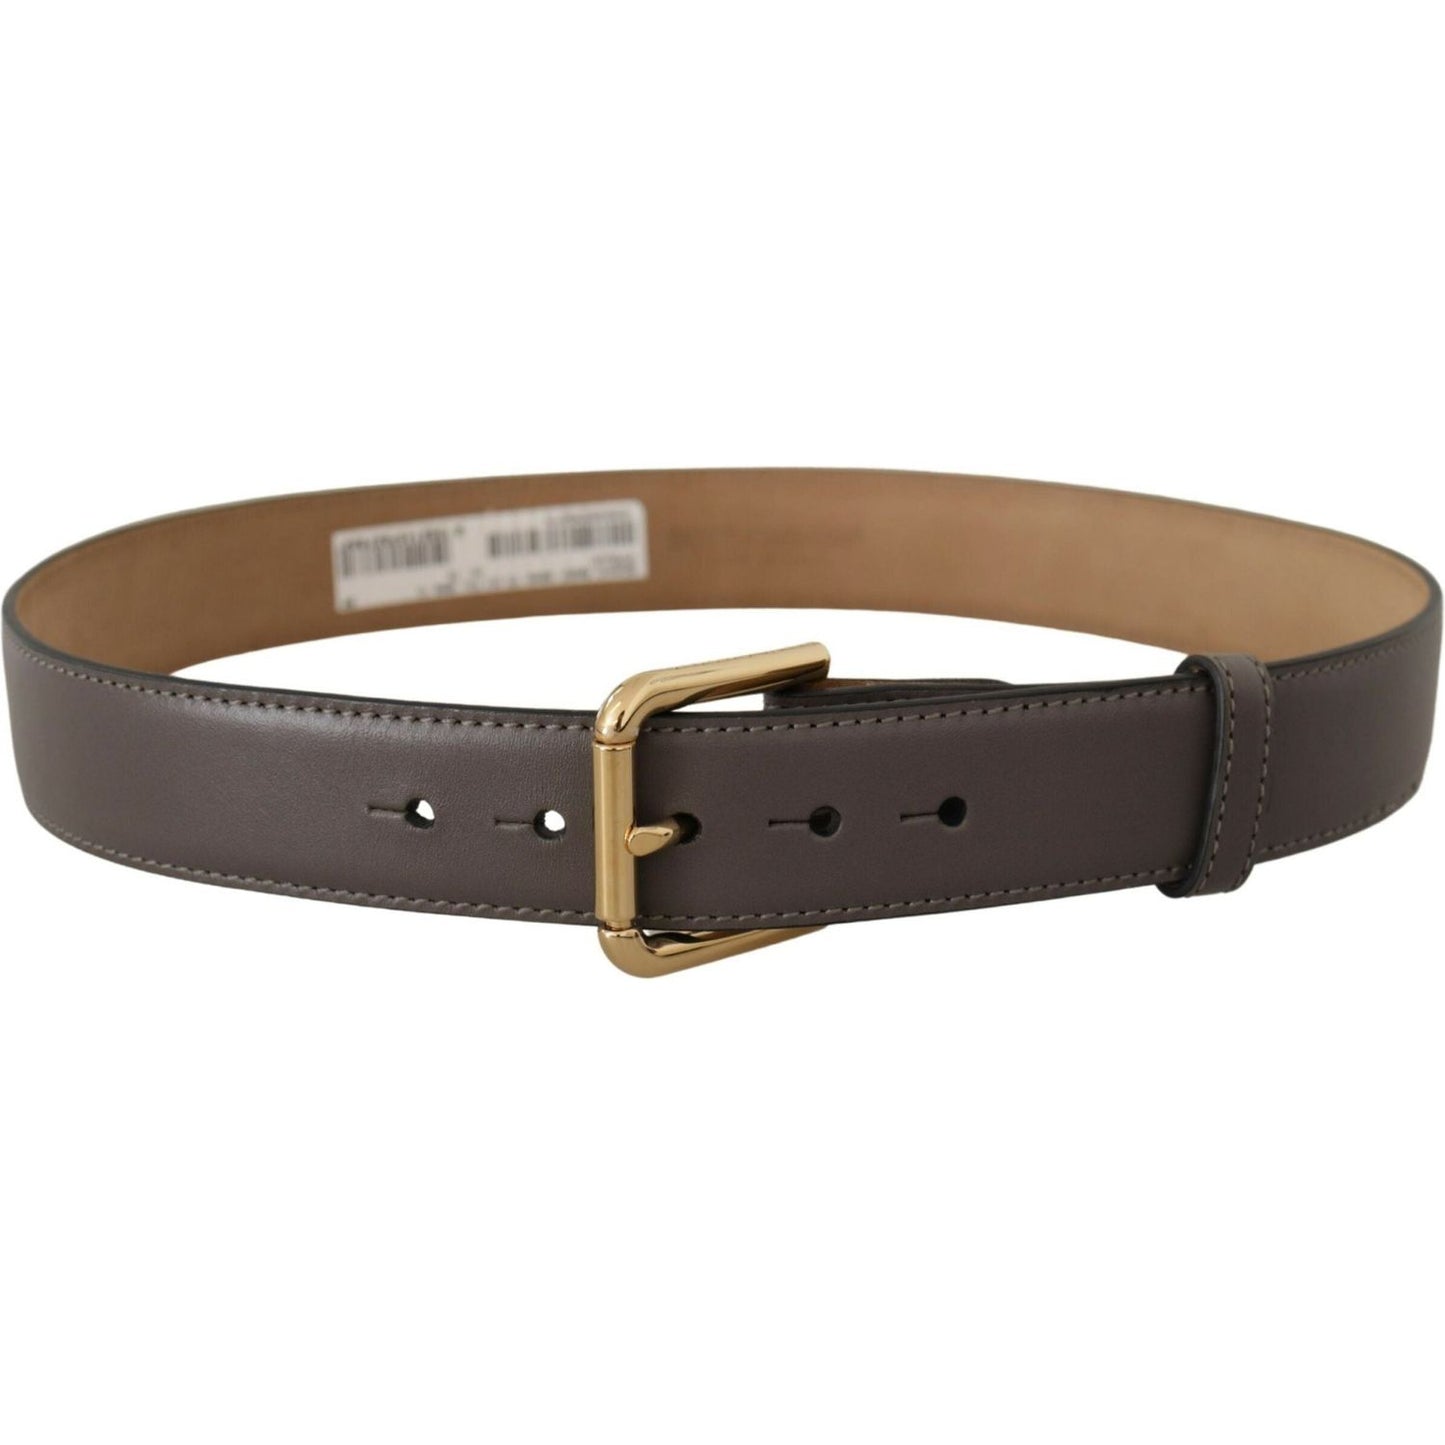 Dolce & Gabbana Elegant Engraved Buckle Leather Belt gray-calfskin-leather-gold-metal-logo-buckle-belt